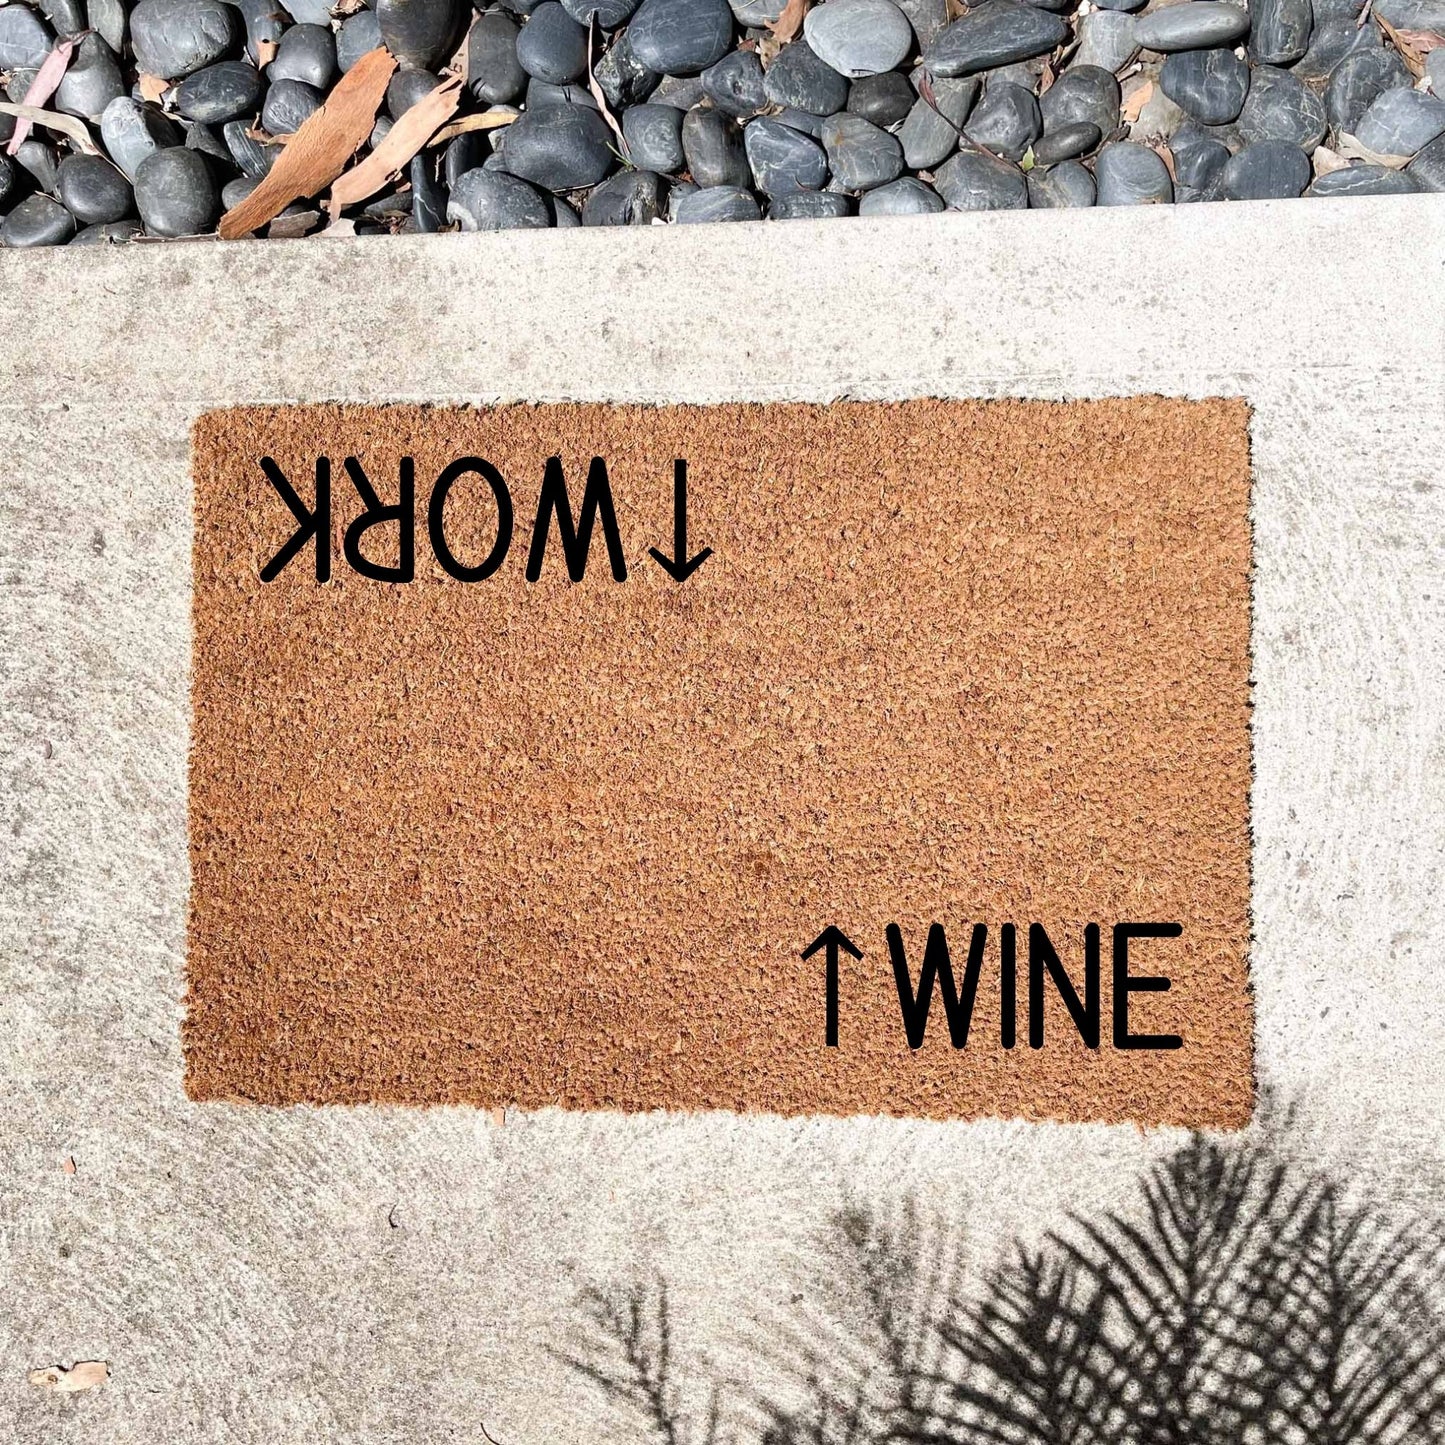 Work wine doormat, funny doormat, custom doormat, personalised doormat